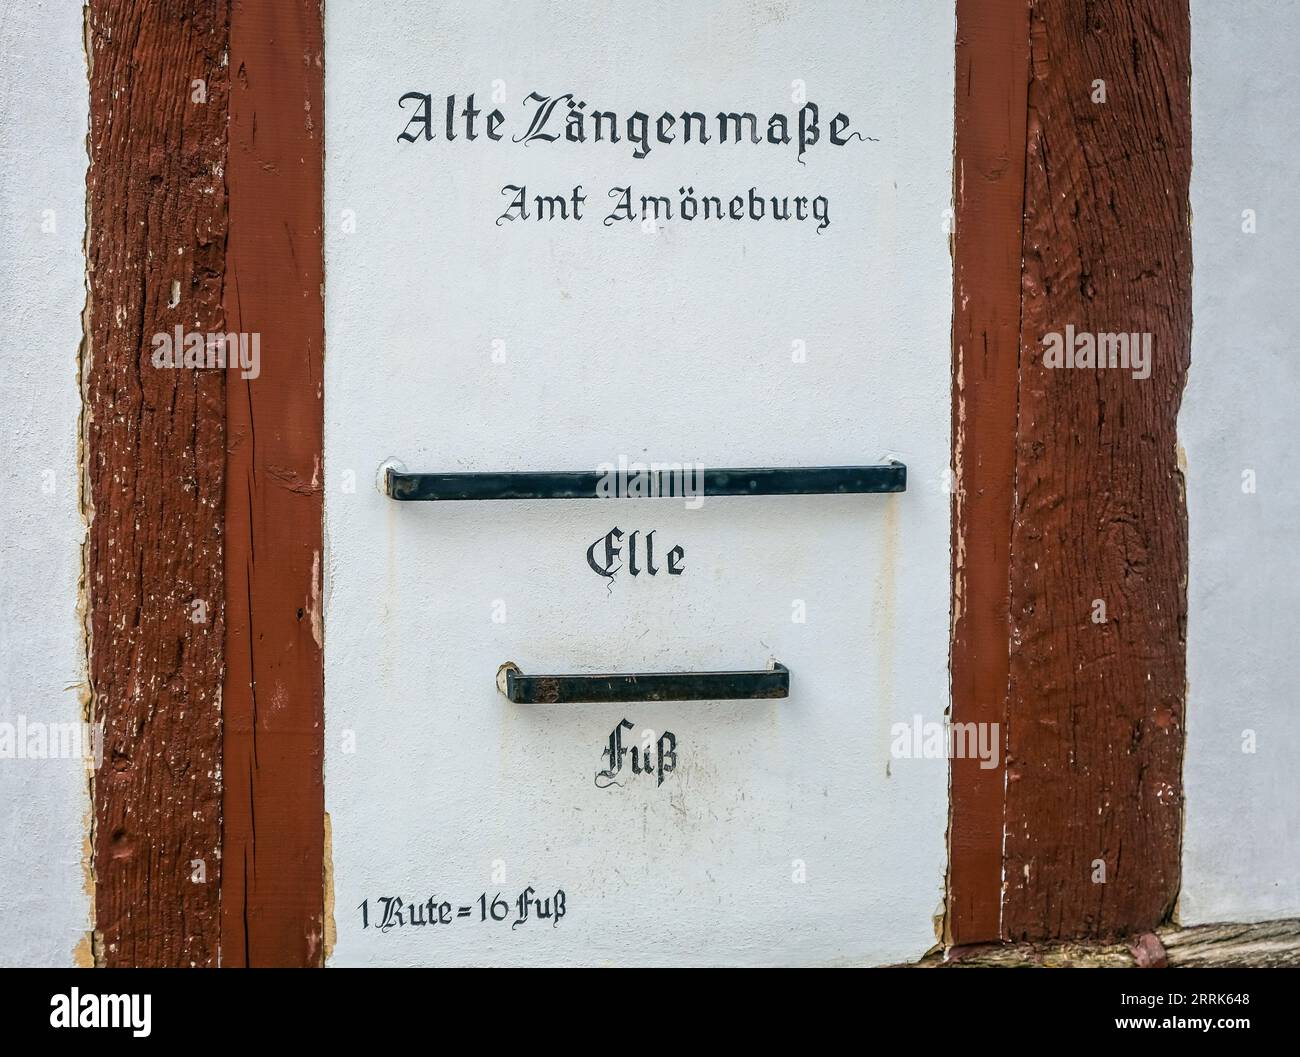 Amöneburg, Hesse, Allemagne - sur la façade du musée de la ville AMT Amöneburg sont les mesures de longueur de ELLE et FUSS. Amöneburg est une petite ville dans le quartier central de Hesse Marburg-Biedenkopf. Il est situé sur la haute montagne de 365 m Amöneburg avec le château Amöneburg au sommet. Banque D'Images